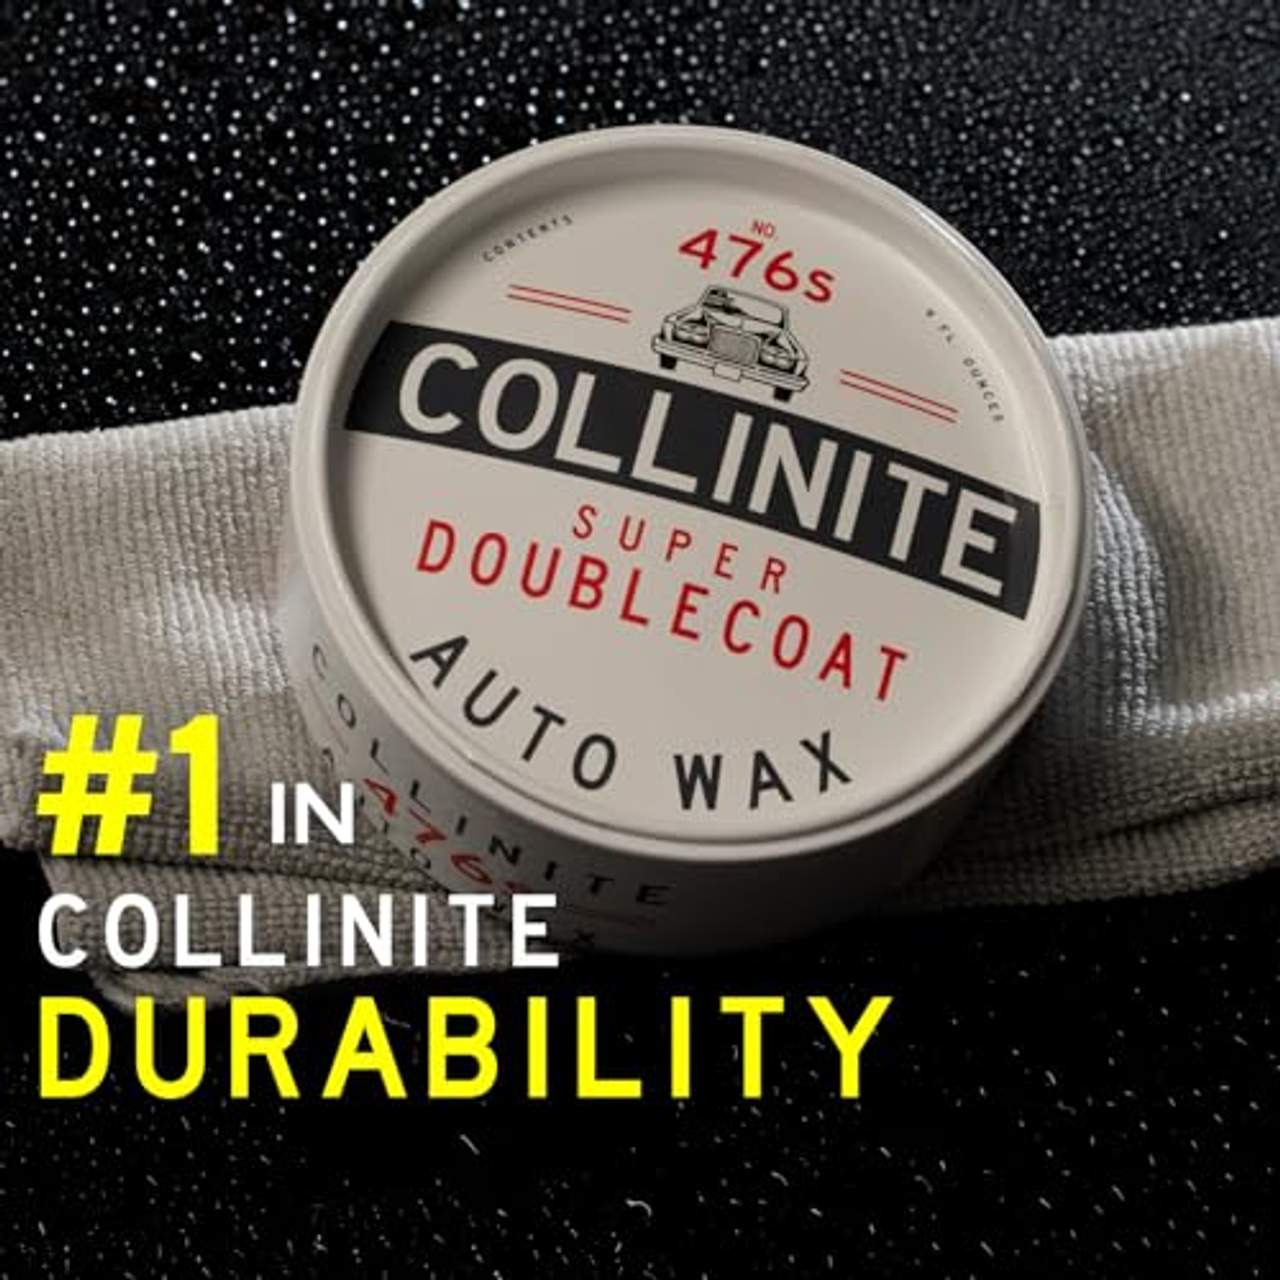 Collinite Super Doublecoat Auto-Wax 266ml